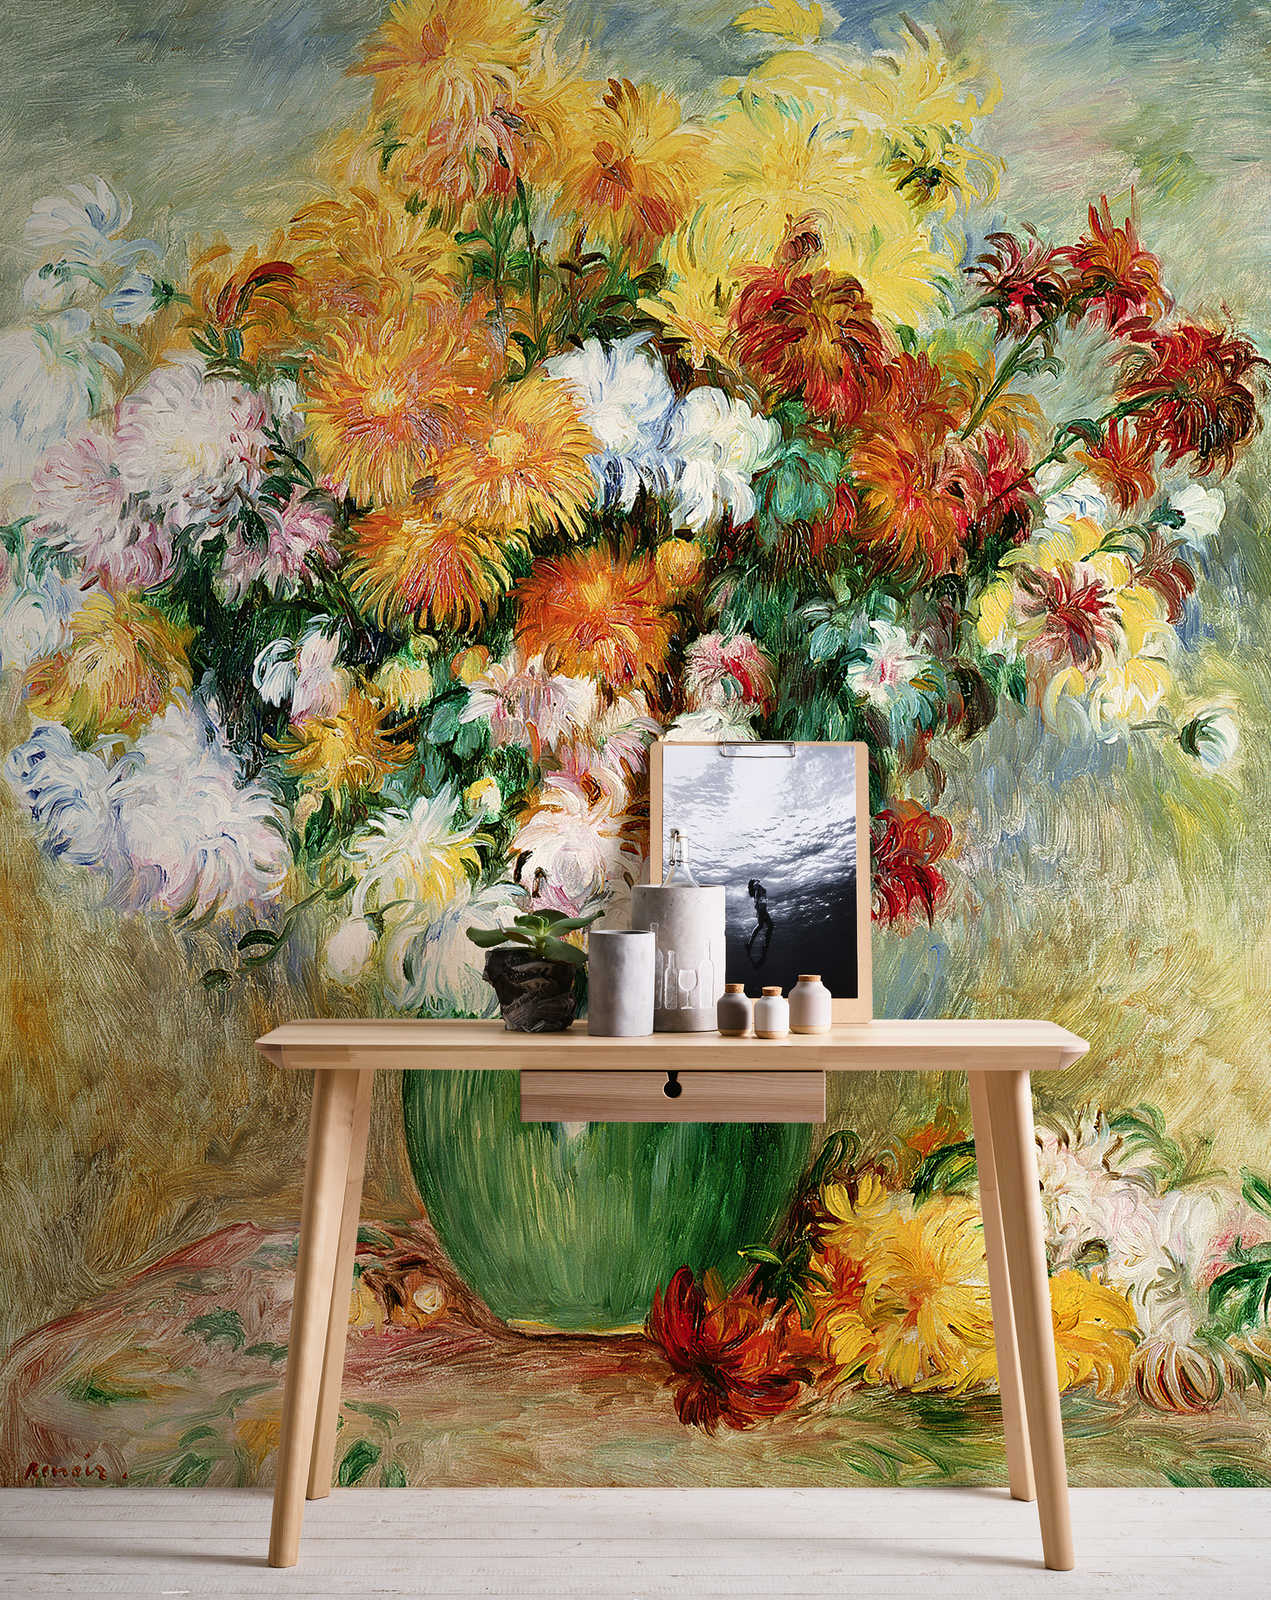             Boeket bloemen met chrysant" muurschildering van Pierre Auguste Renoir
        